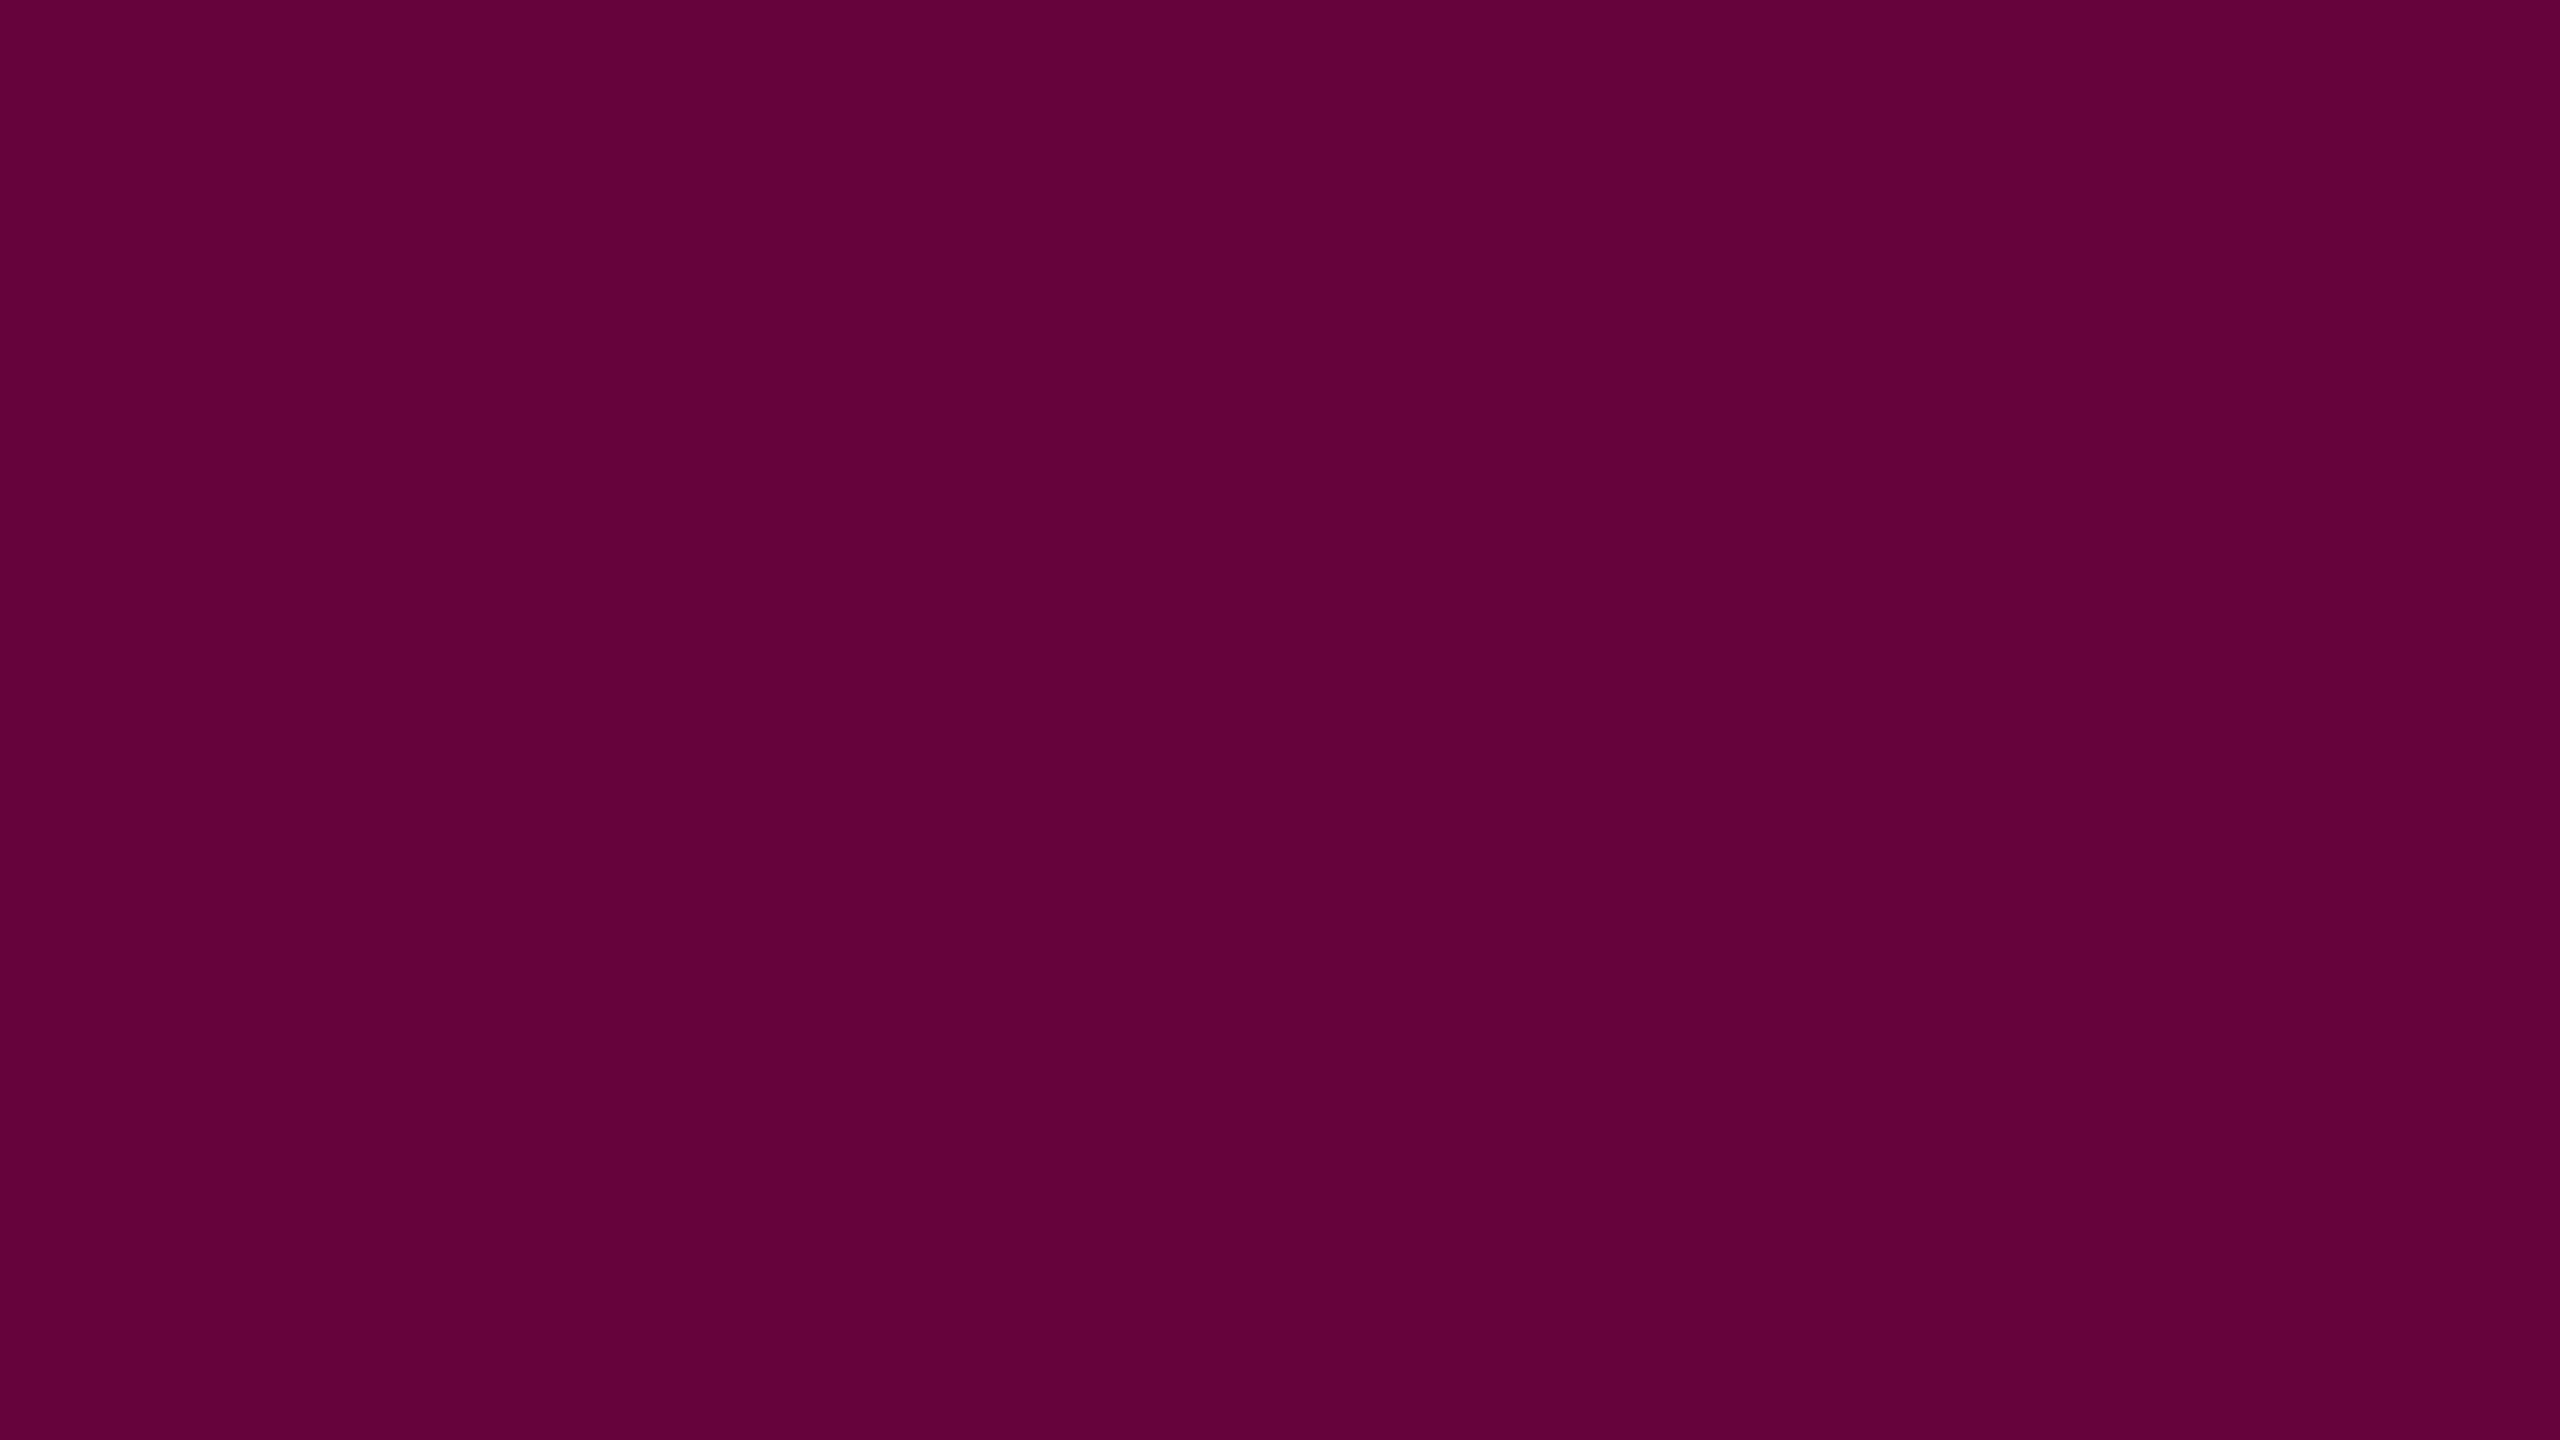 download tyrian purple dye for sale